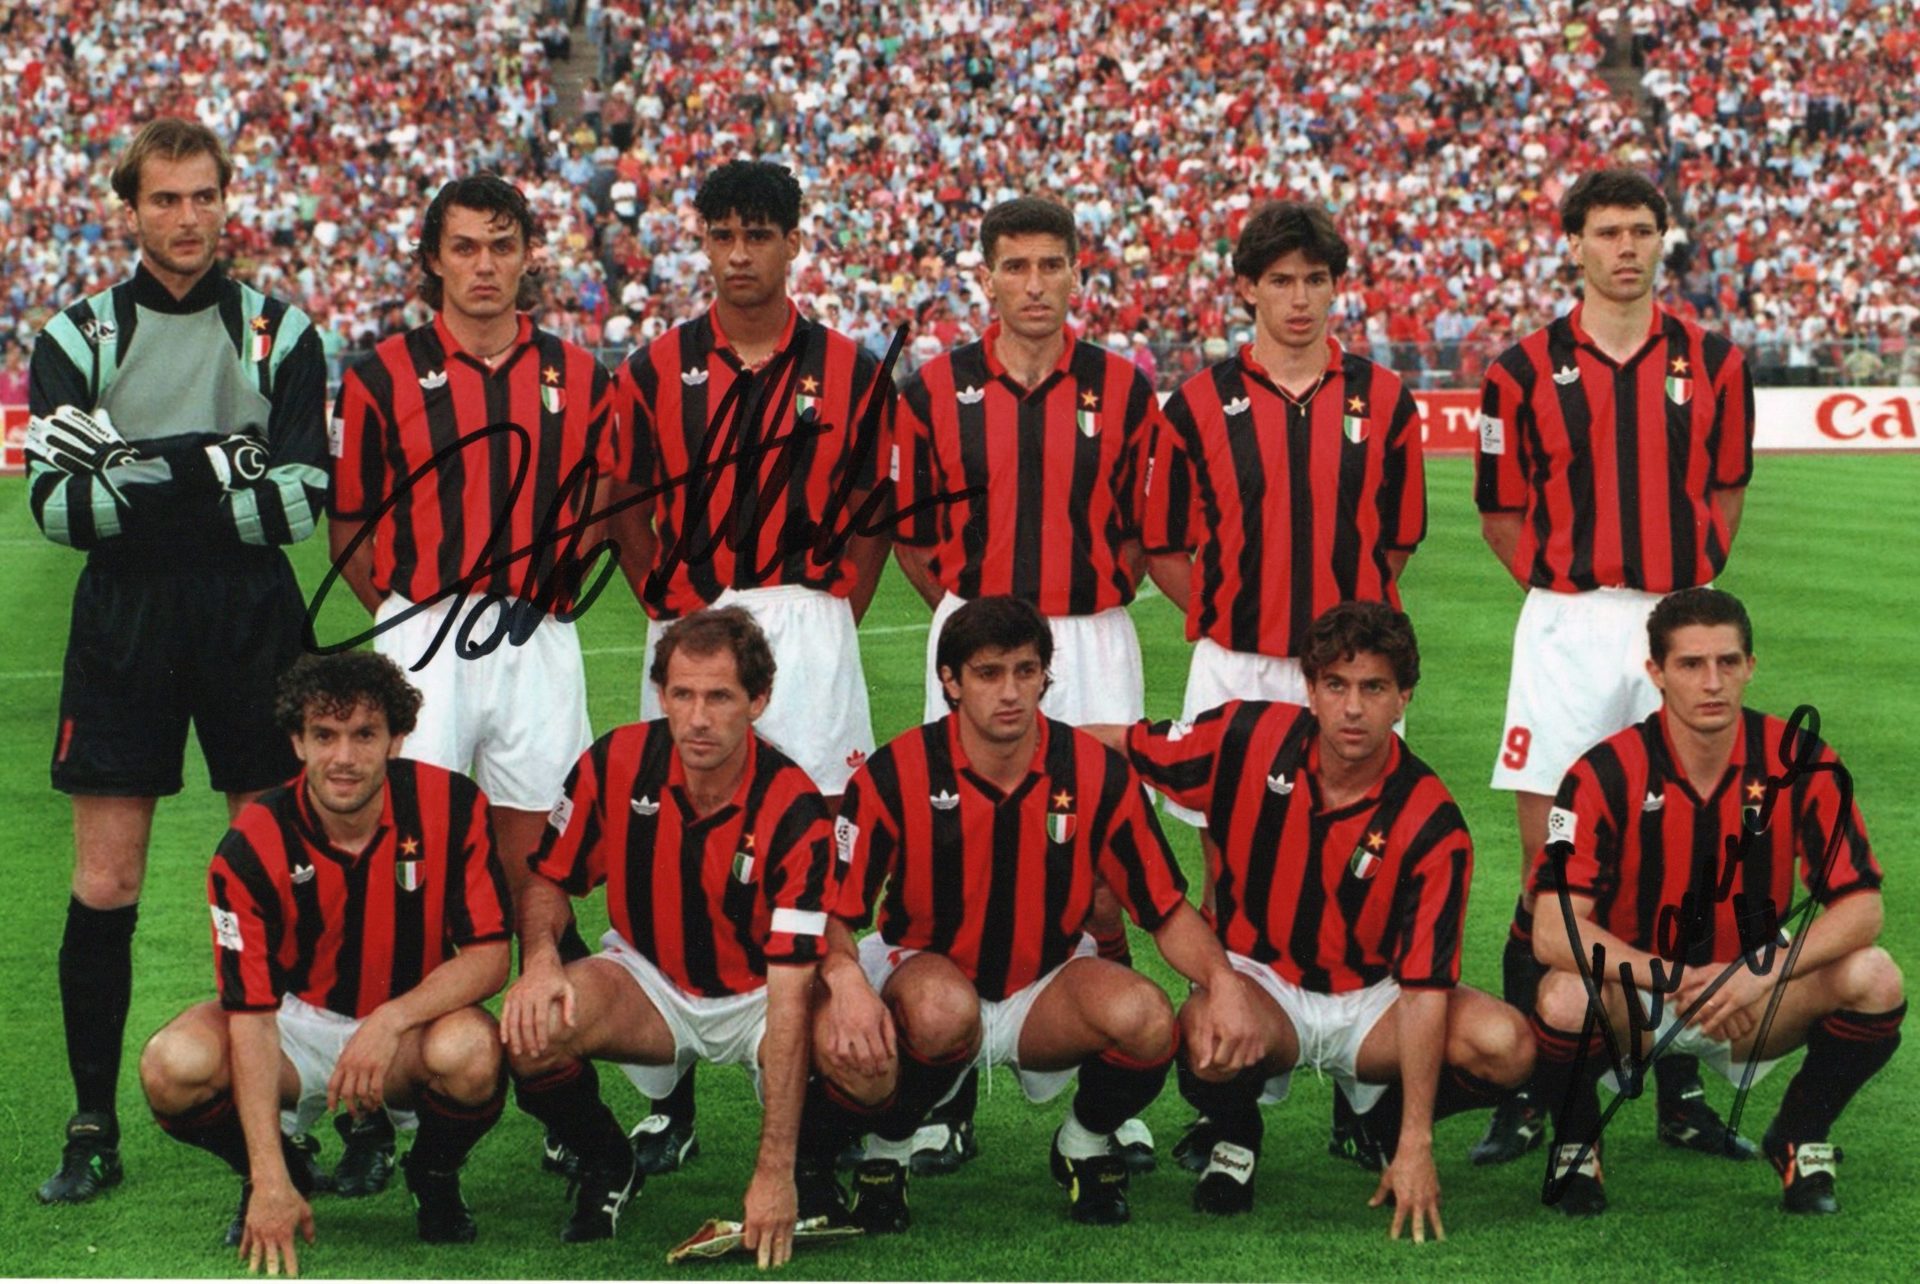 Fabio Capello, Paolo Maldini and Daniele Massaro – Signed Photo – Soccer  (A.C. Milan) - SignedForCharity